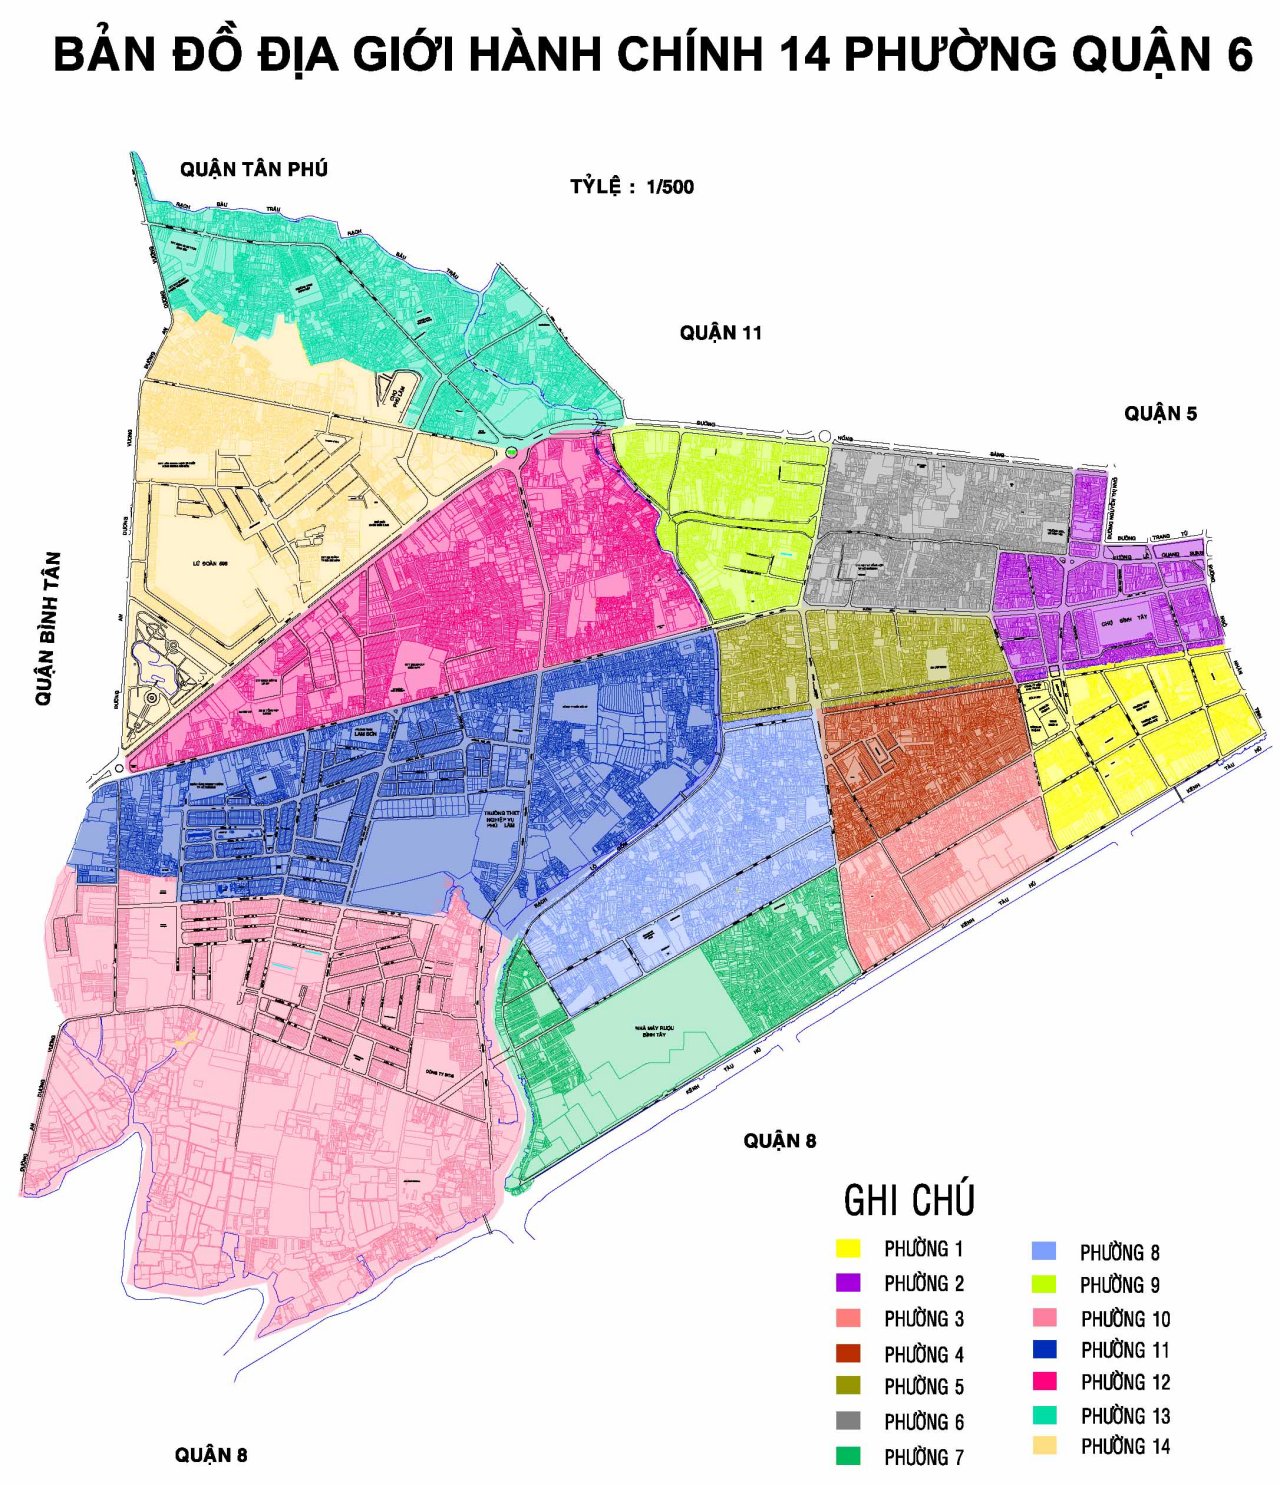 Bản đồ Hành chính Quận 6 tại TPHCM khổ lớn năm 2024 - thông tin địa điểm du lịch: Với bản đồ hành chính Quận 6 khổ lớn năm 2024, bạn có thể khám phá thành phố chi tiết hơn, tiếp cận với thông tin địa điểm du lịch và các khu vực quan trọng của quận. Bản đồ cung cấp cho bạn toàn bộ thông tin cần thiết để thuận tiện cho việc di chuyển và khám phá quận.